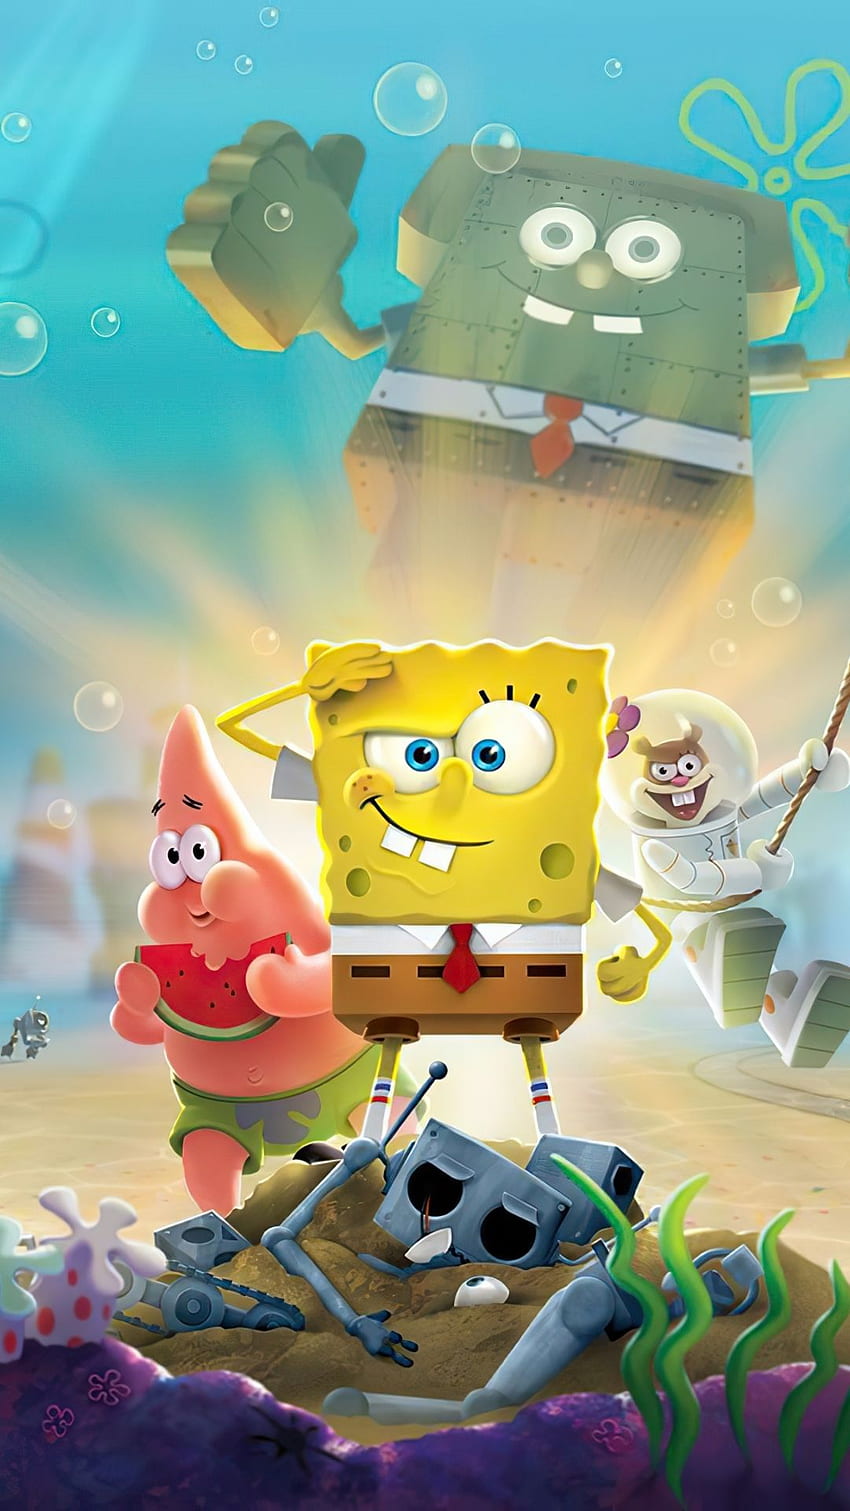 Download Sad Emo SpongeBob PFP Wallpaper